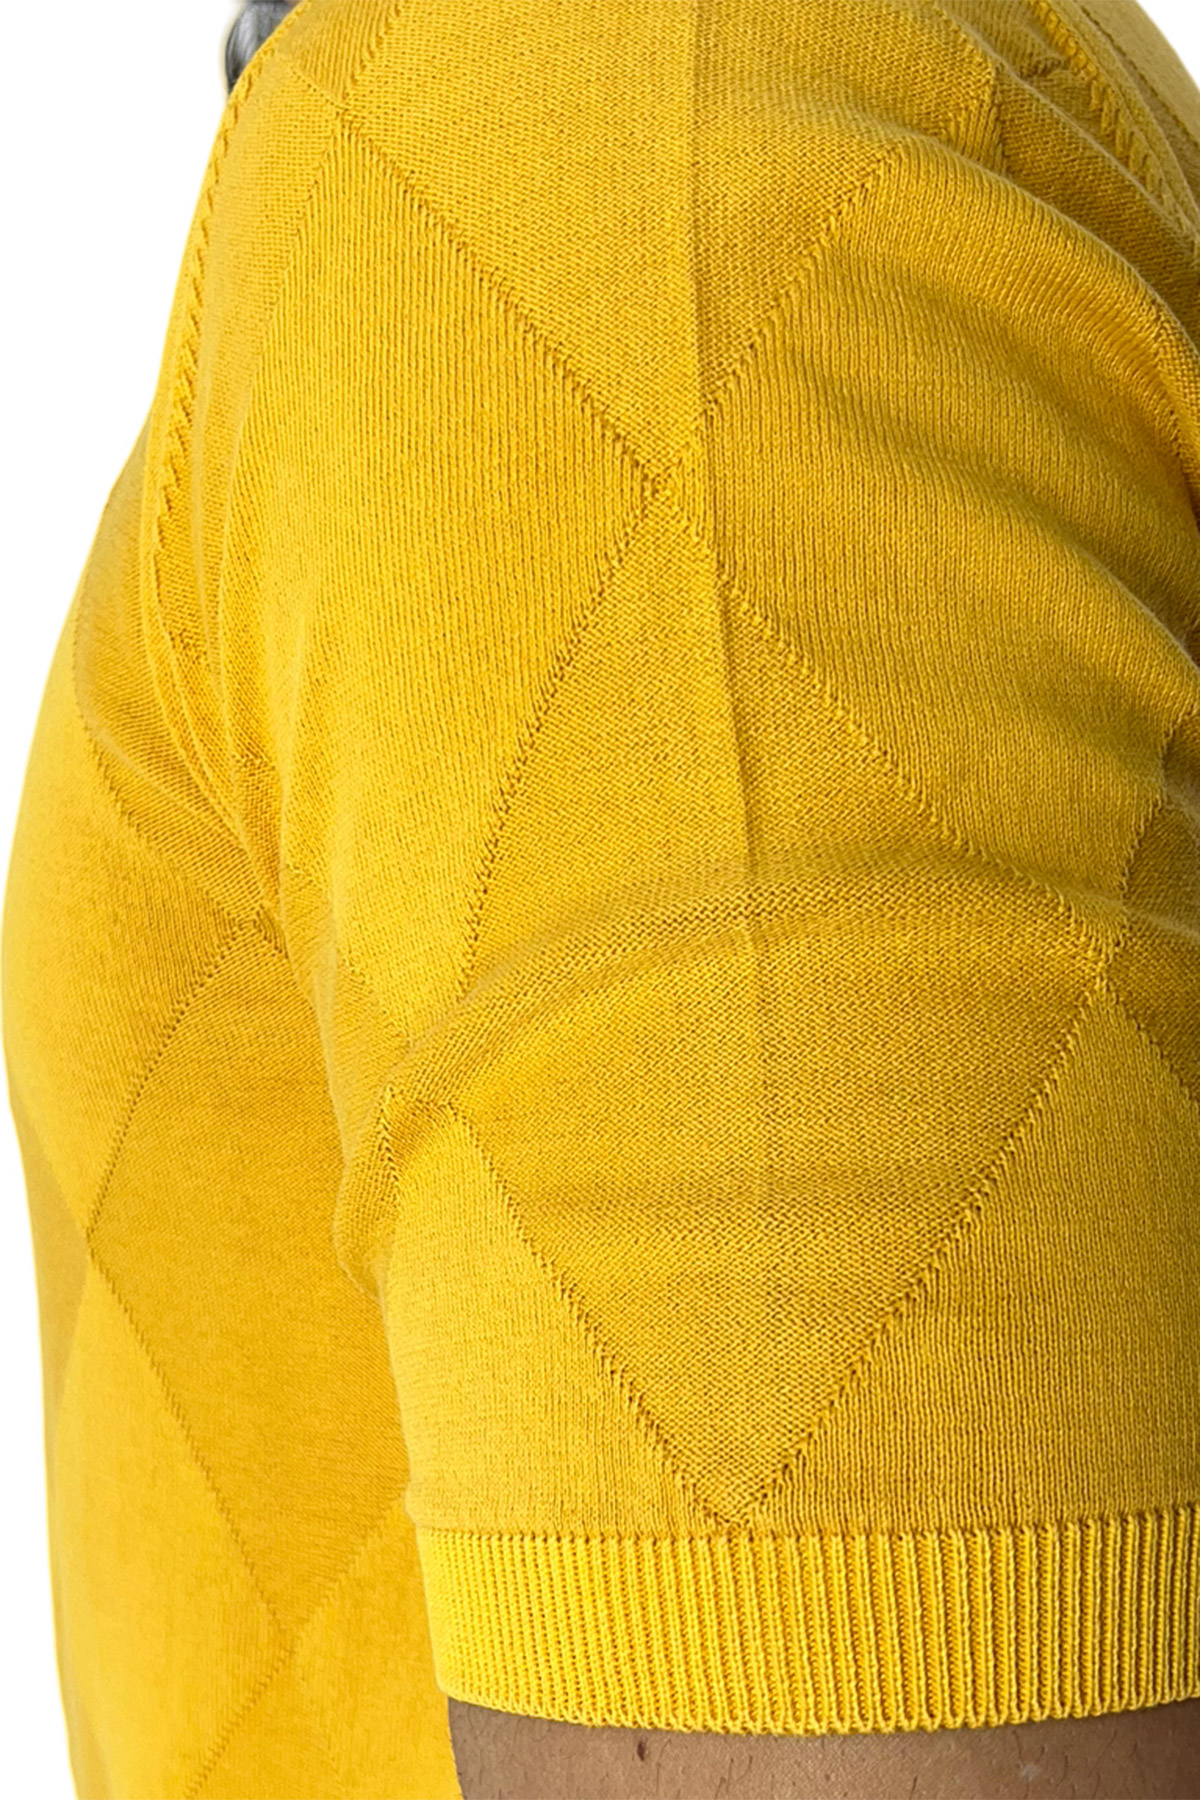 Maglioncino da uomo Giallo mezze maniche 100% cotone di filo finezza 14 trama rombi tono su tono